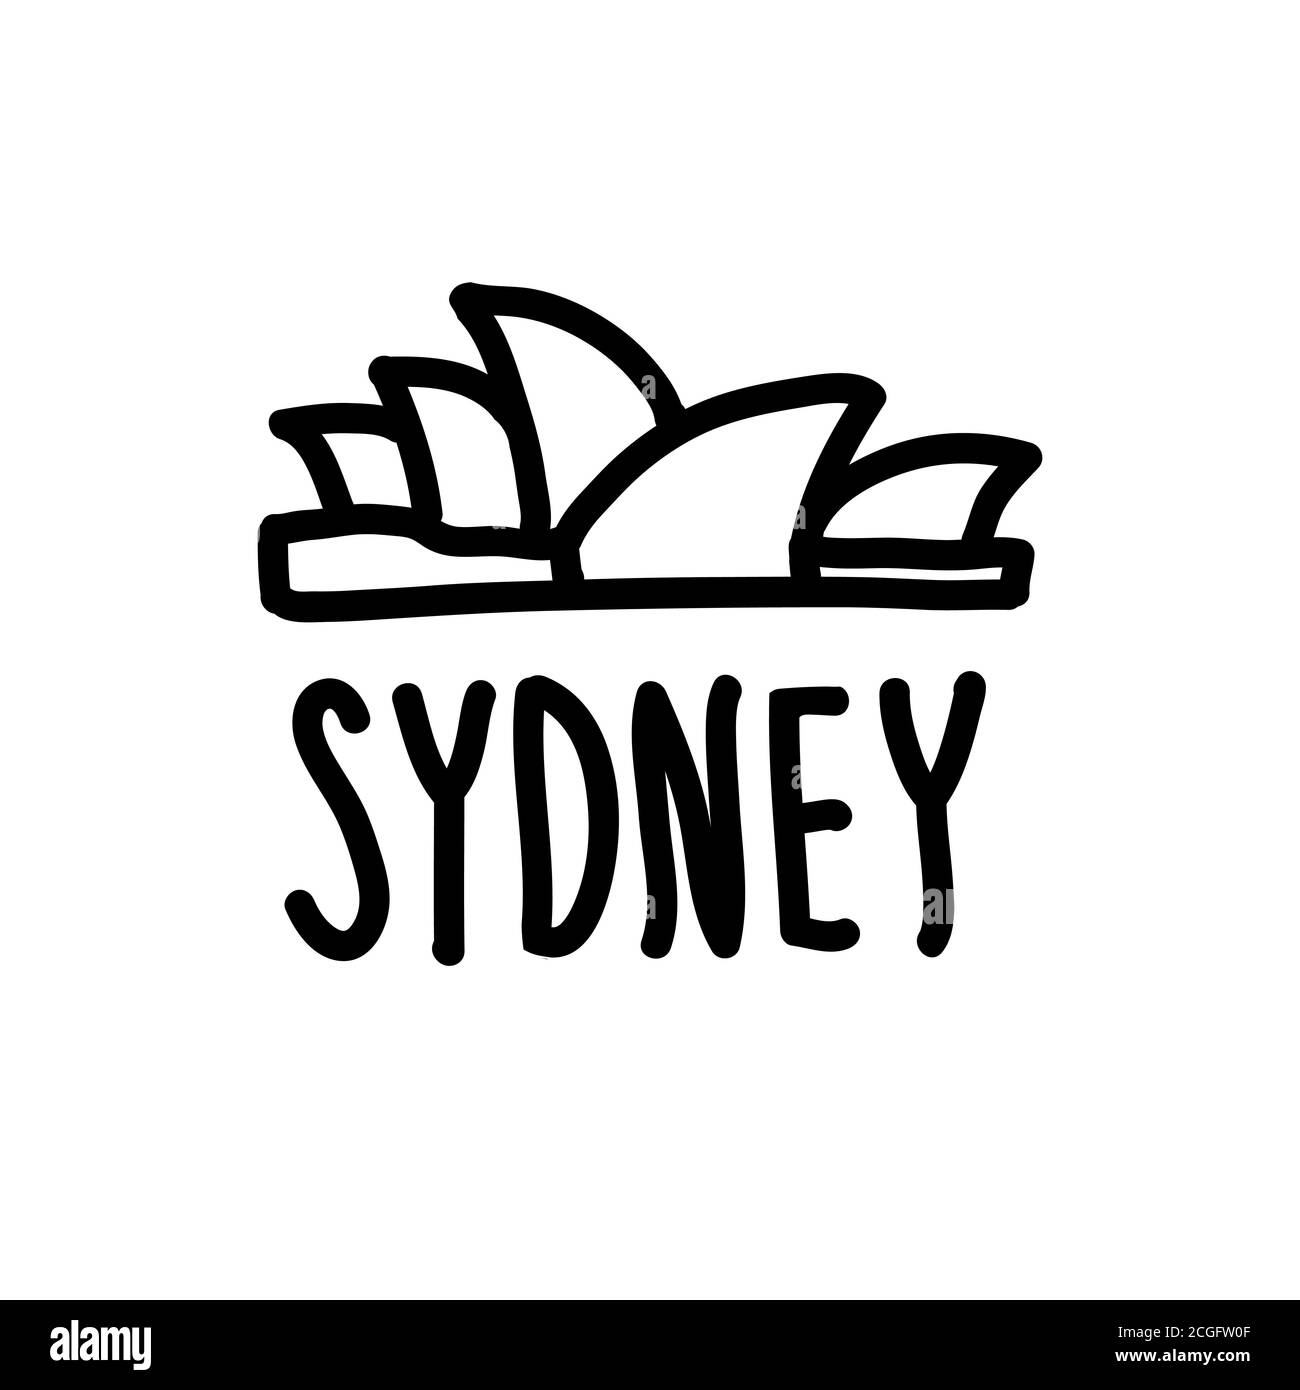 Doodle scritta Sydney e il suo simbolo principale. Teatro dell'Opera di Sydney. Disegno a mano con un semplice contorno nero. Illustrazione vettoriale isolata in bianco Illustrazione Vettoriale